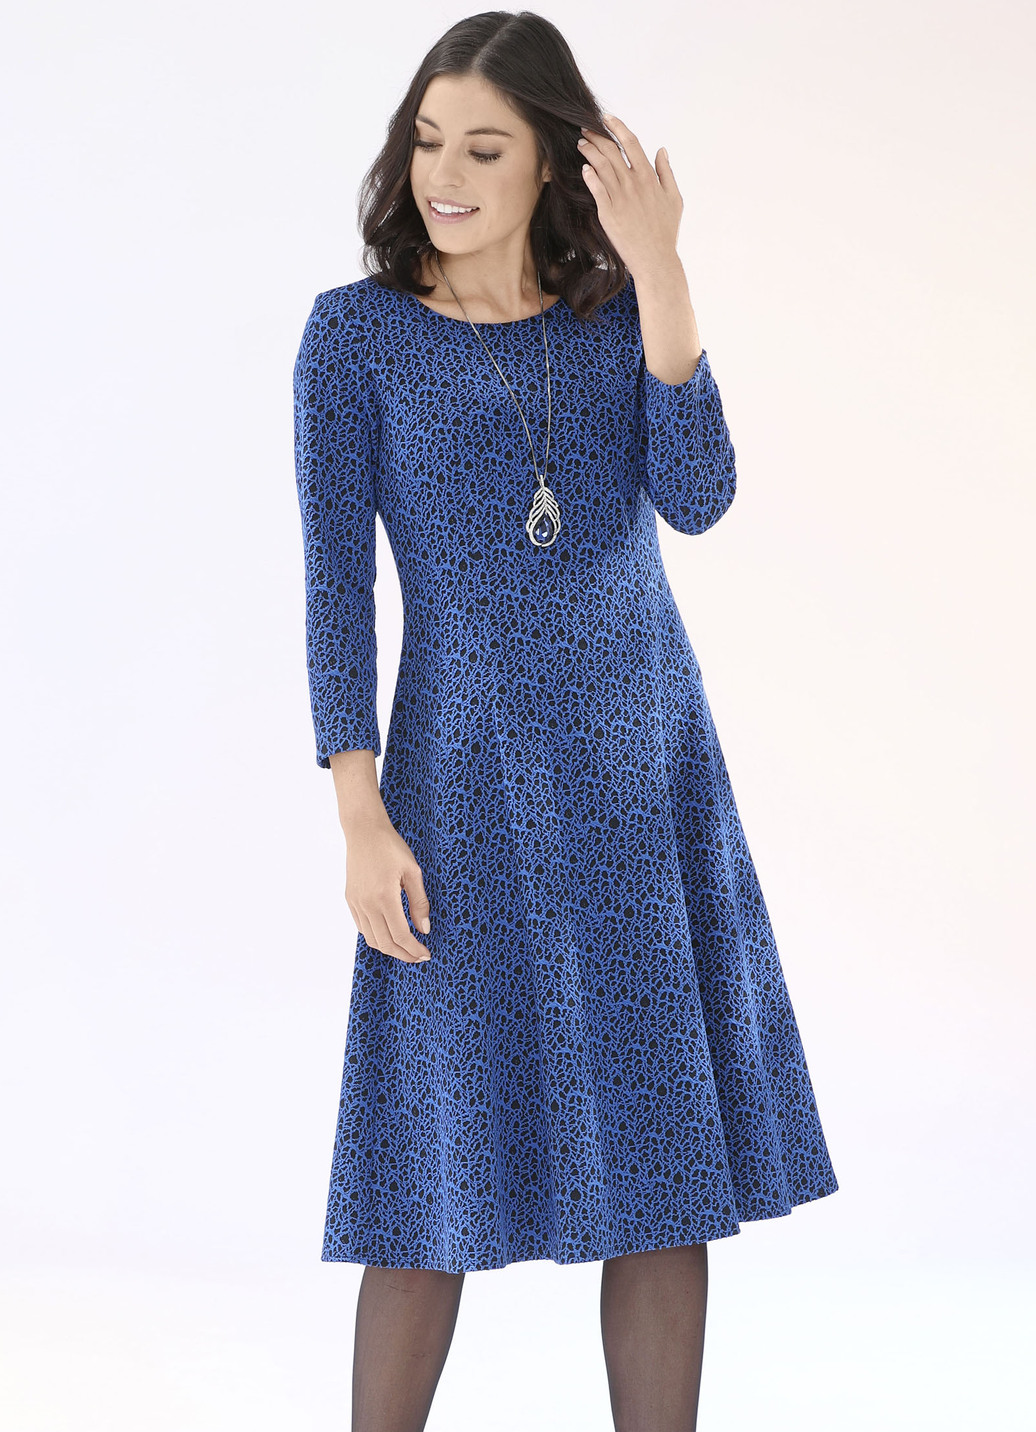 Strick-Kleid mit leichtem Cloqué-Effekt, Royalblau-Schwarz, Größe 546 von KLAUS MODELLE